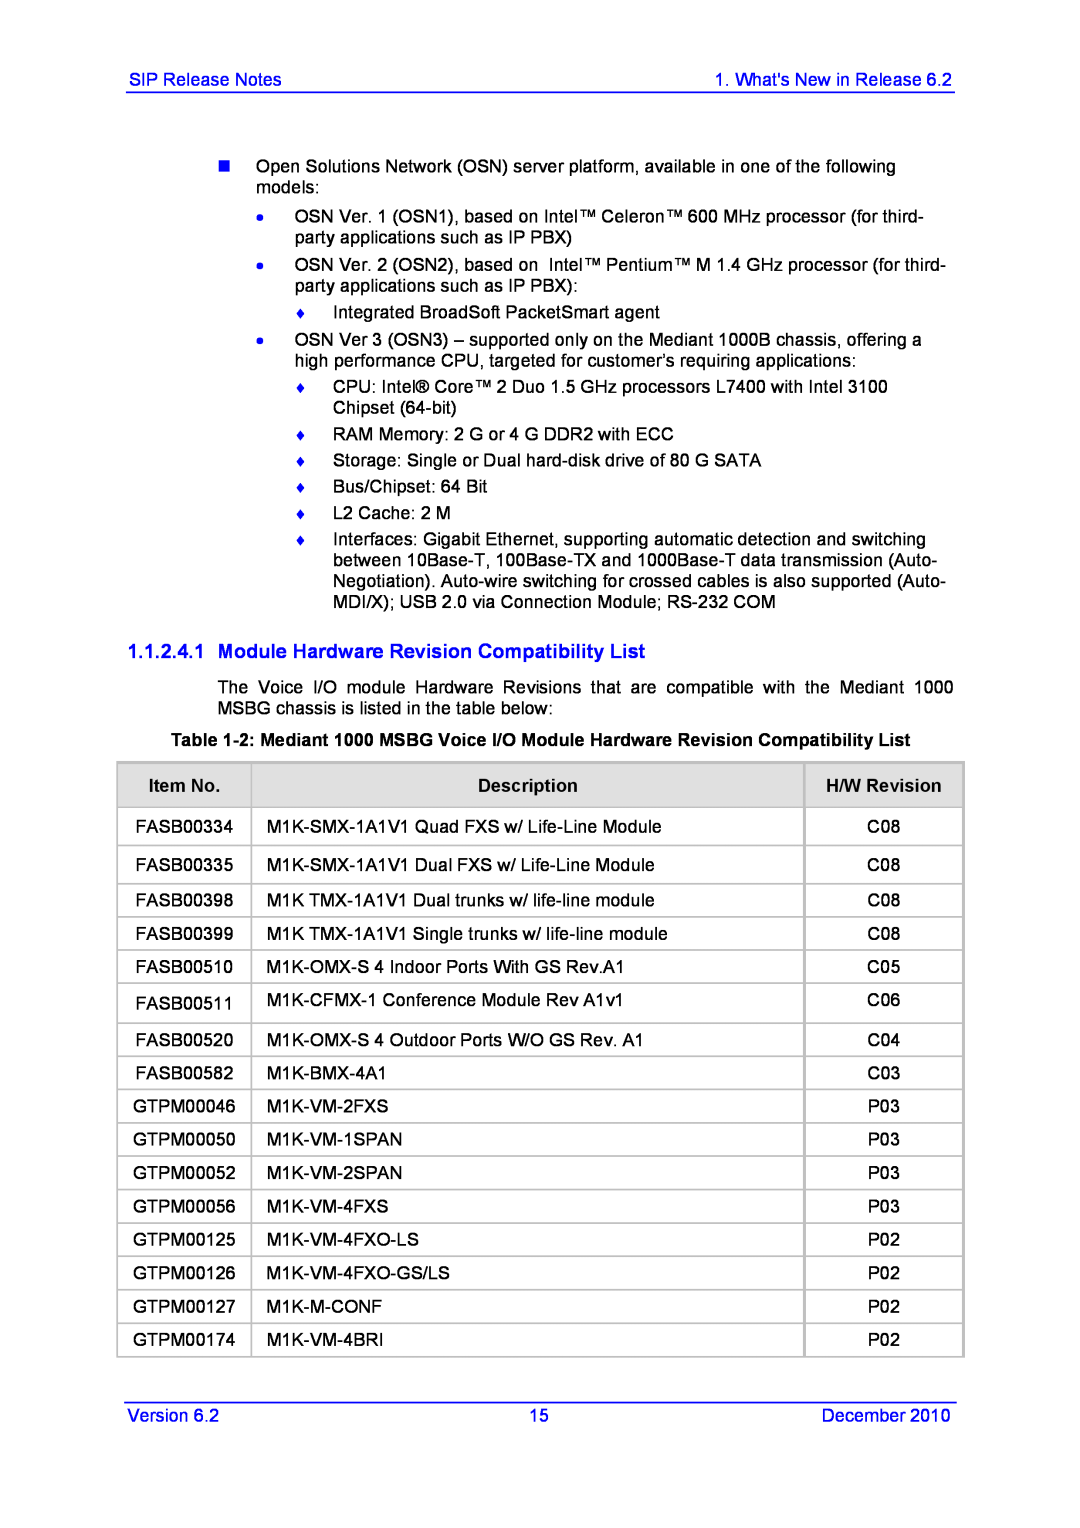 AudioControl VERSION 6.2 manual Module Hardware Revision Compatibility List, Item No, Description, H/W Revision 